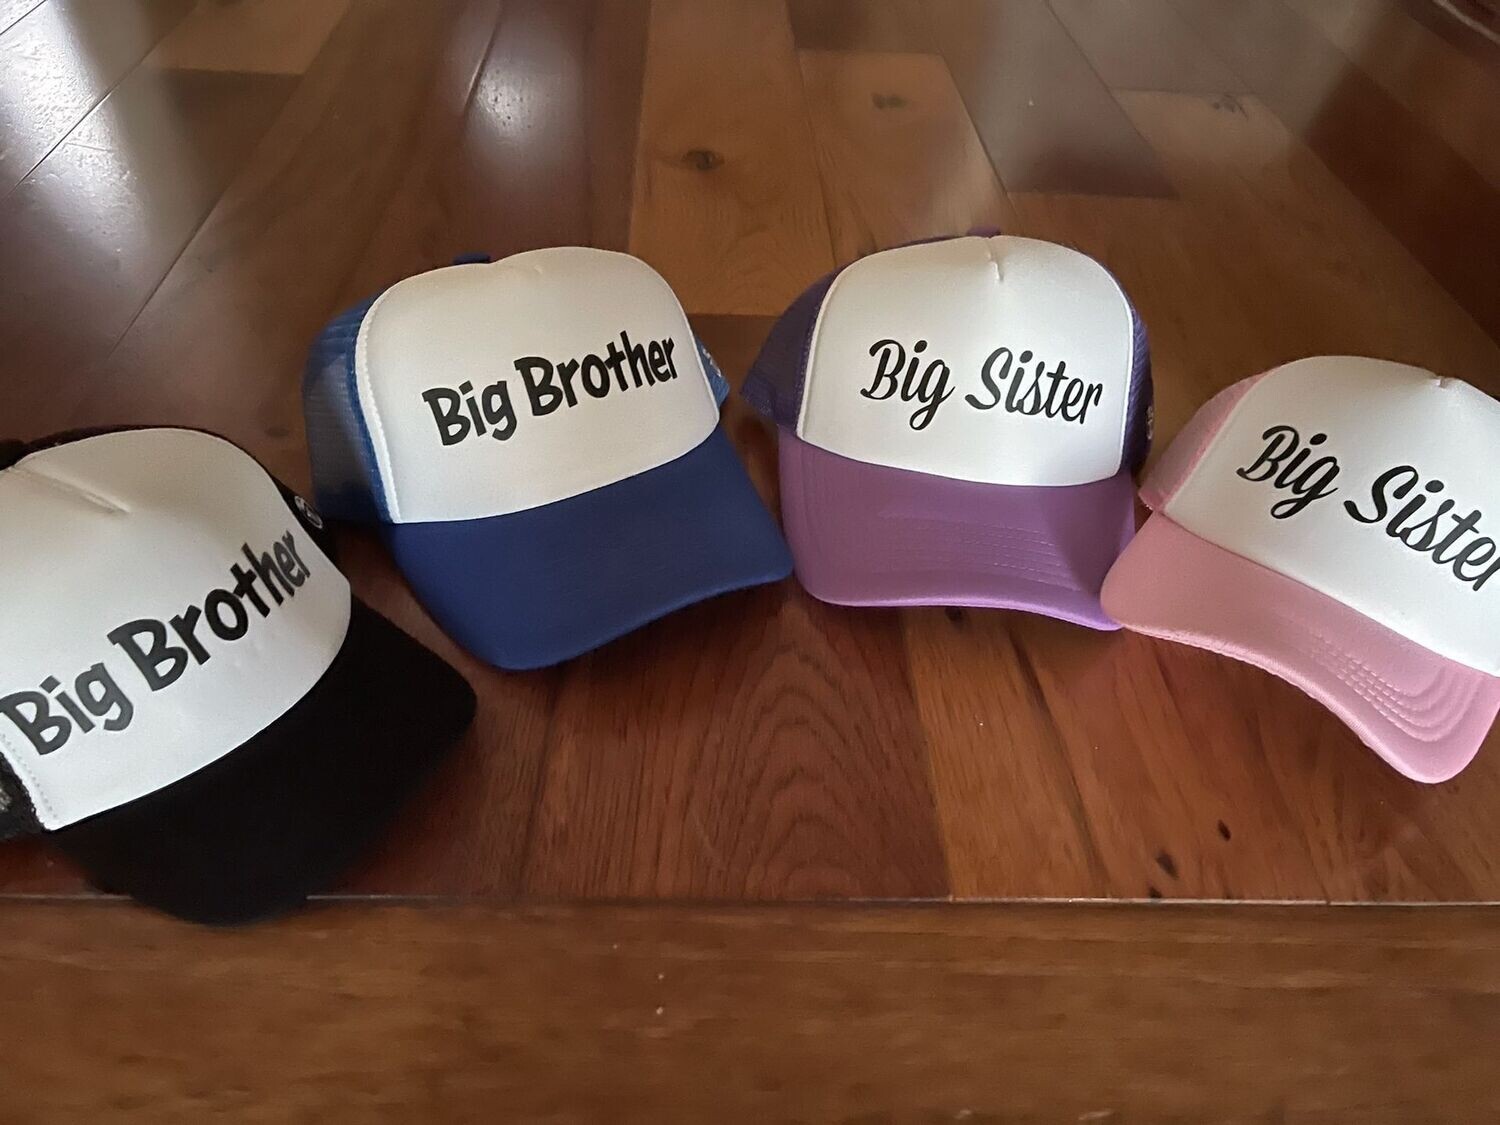 Big brother, Big sister trucker hats